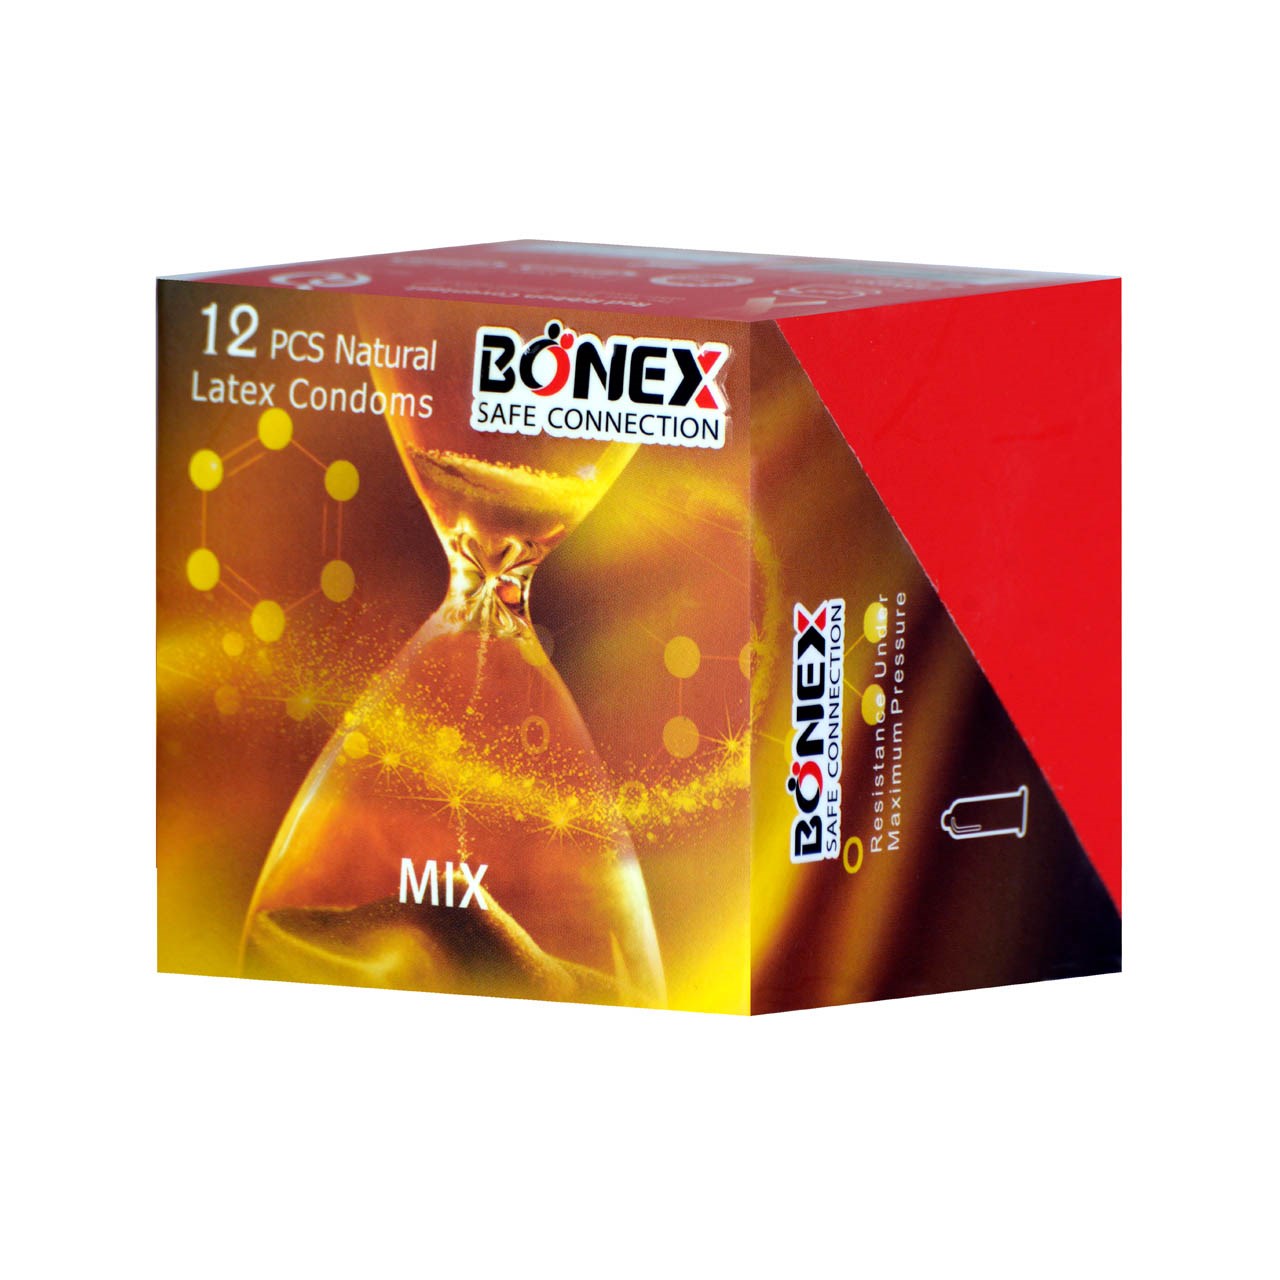 کاندوم بونکس مدل Mix بسته 12 عددی